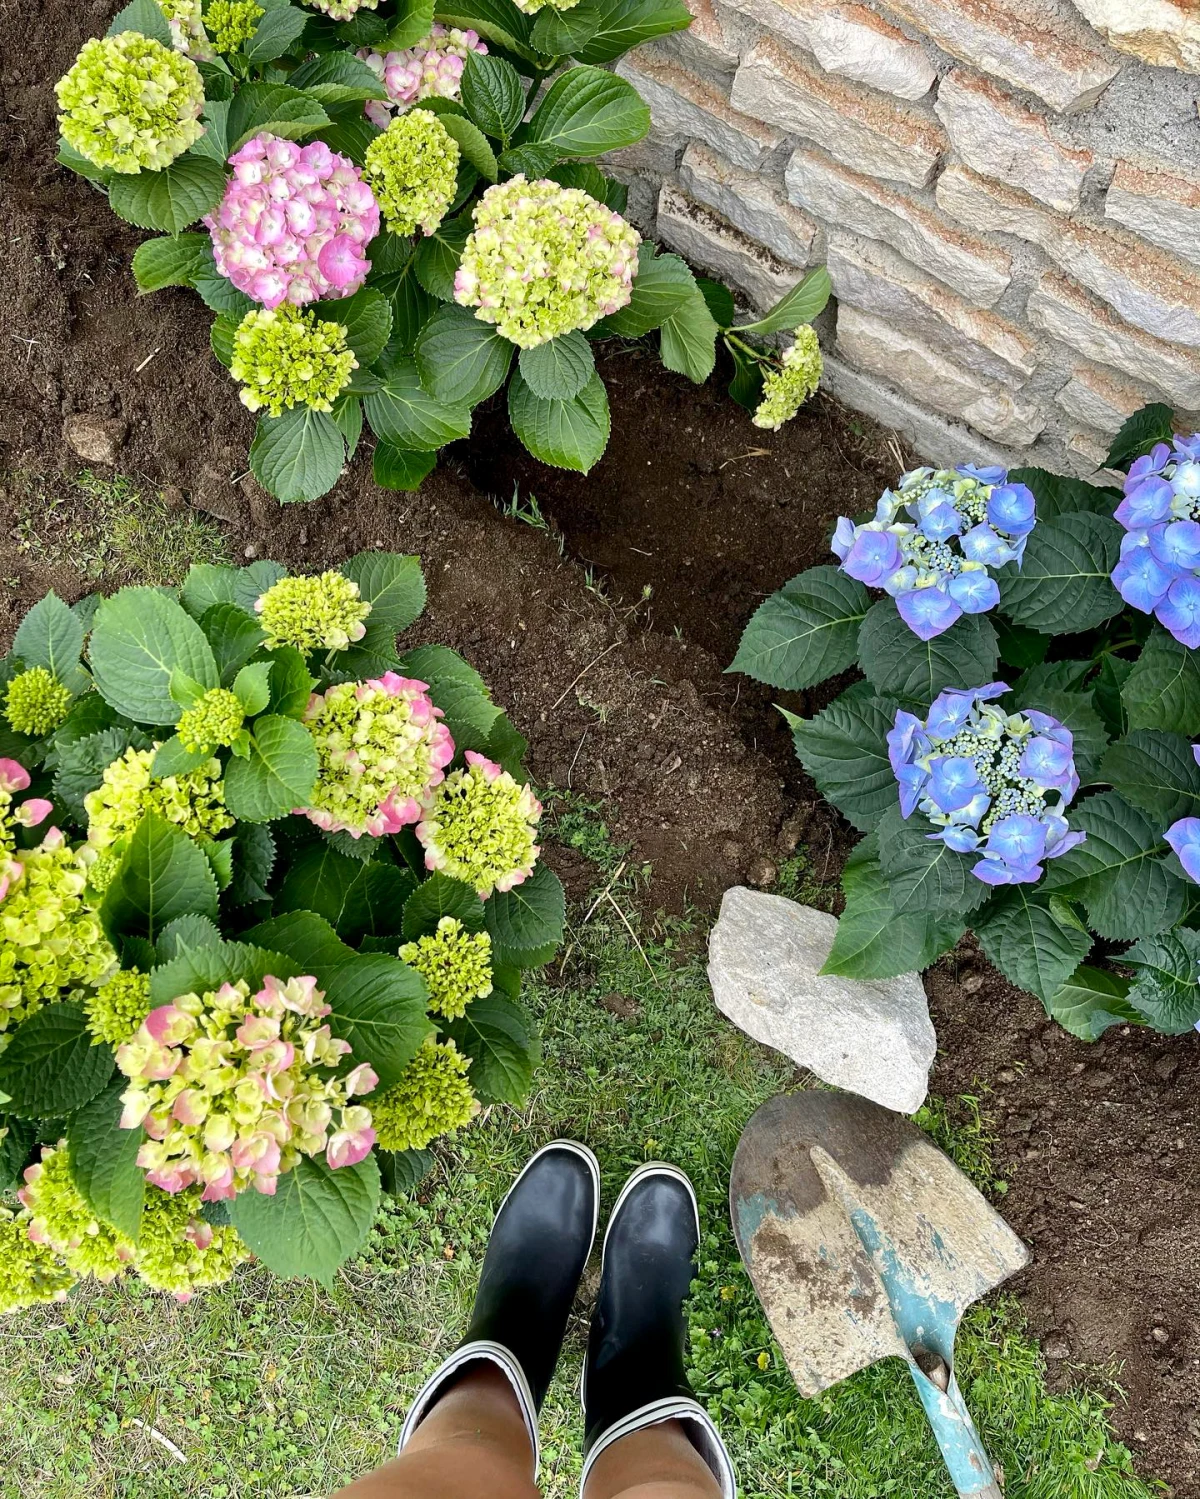 comment fertiliser les hortenisas fleurs bleues jaunes et feuilles vertes